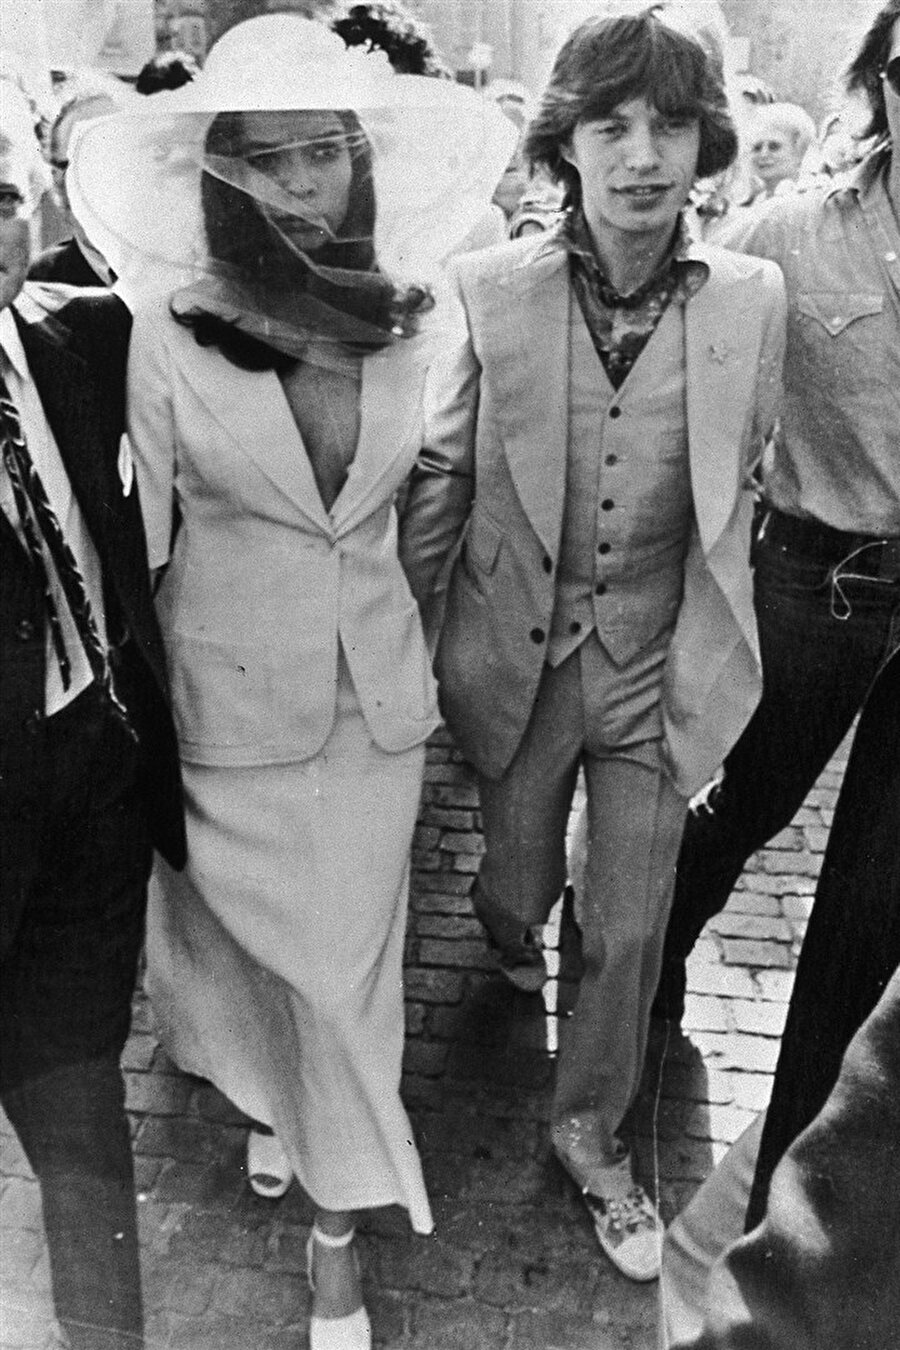 Bianca Pérez - Mora Macias

                                    
                                    1971'de Mick Jagger'la evlenen Bianca Pérez-Mora Macias, geleneksel bir elbise yerine beyaz bir döpiyes tercih etti. Bianca'nın elbisesinin terzisi Tommy Nutter'dı.
                                
                                